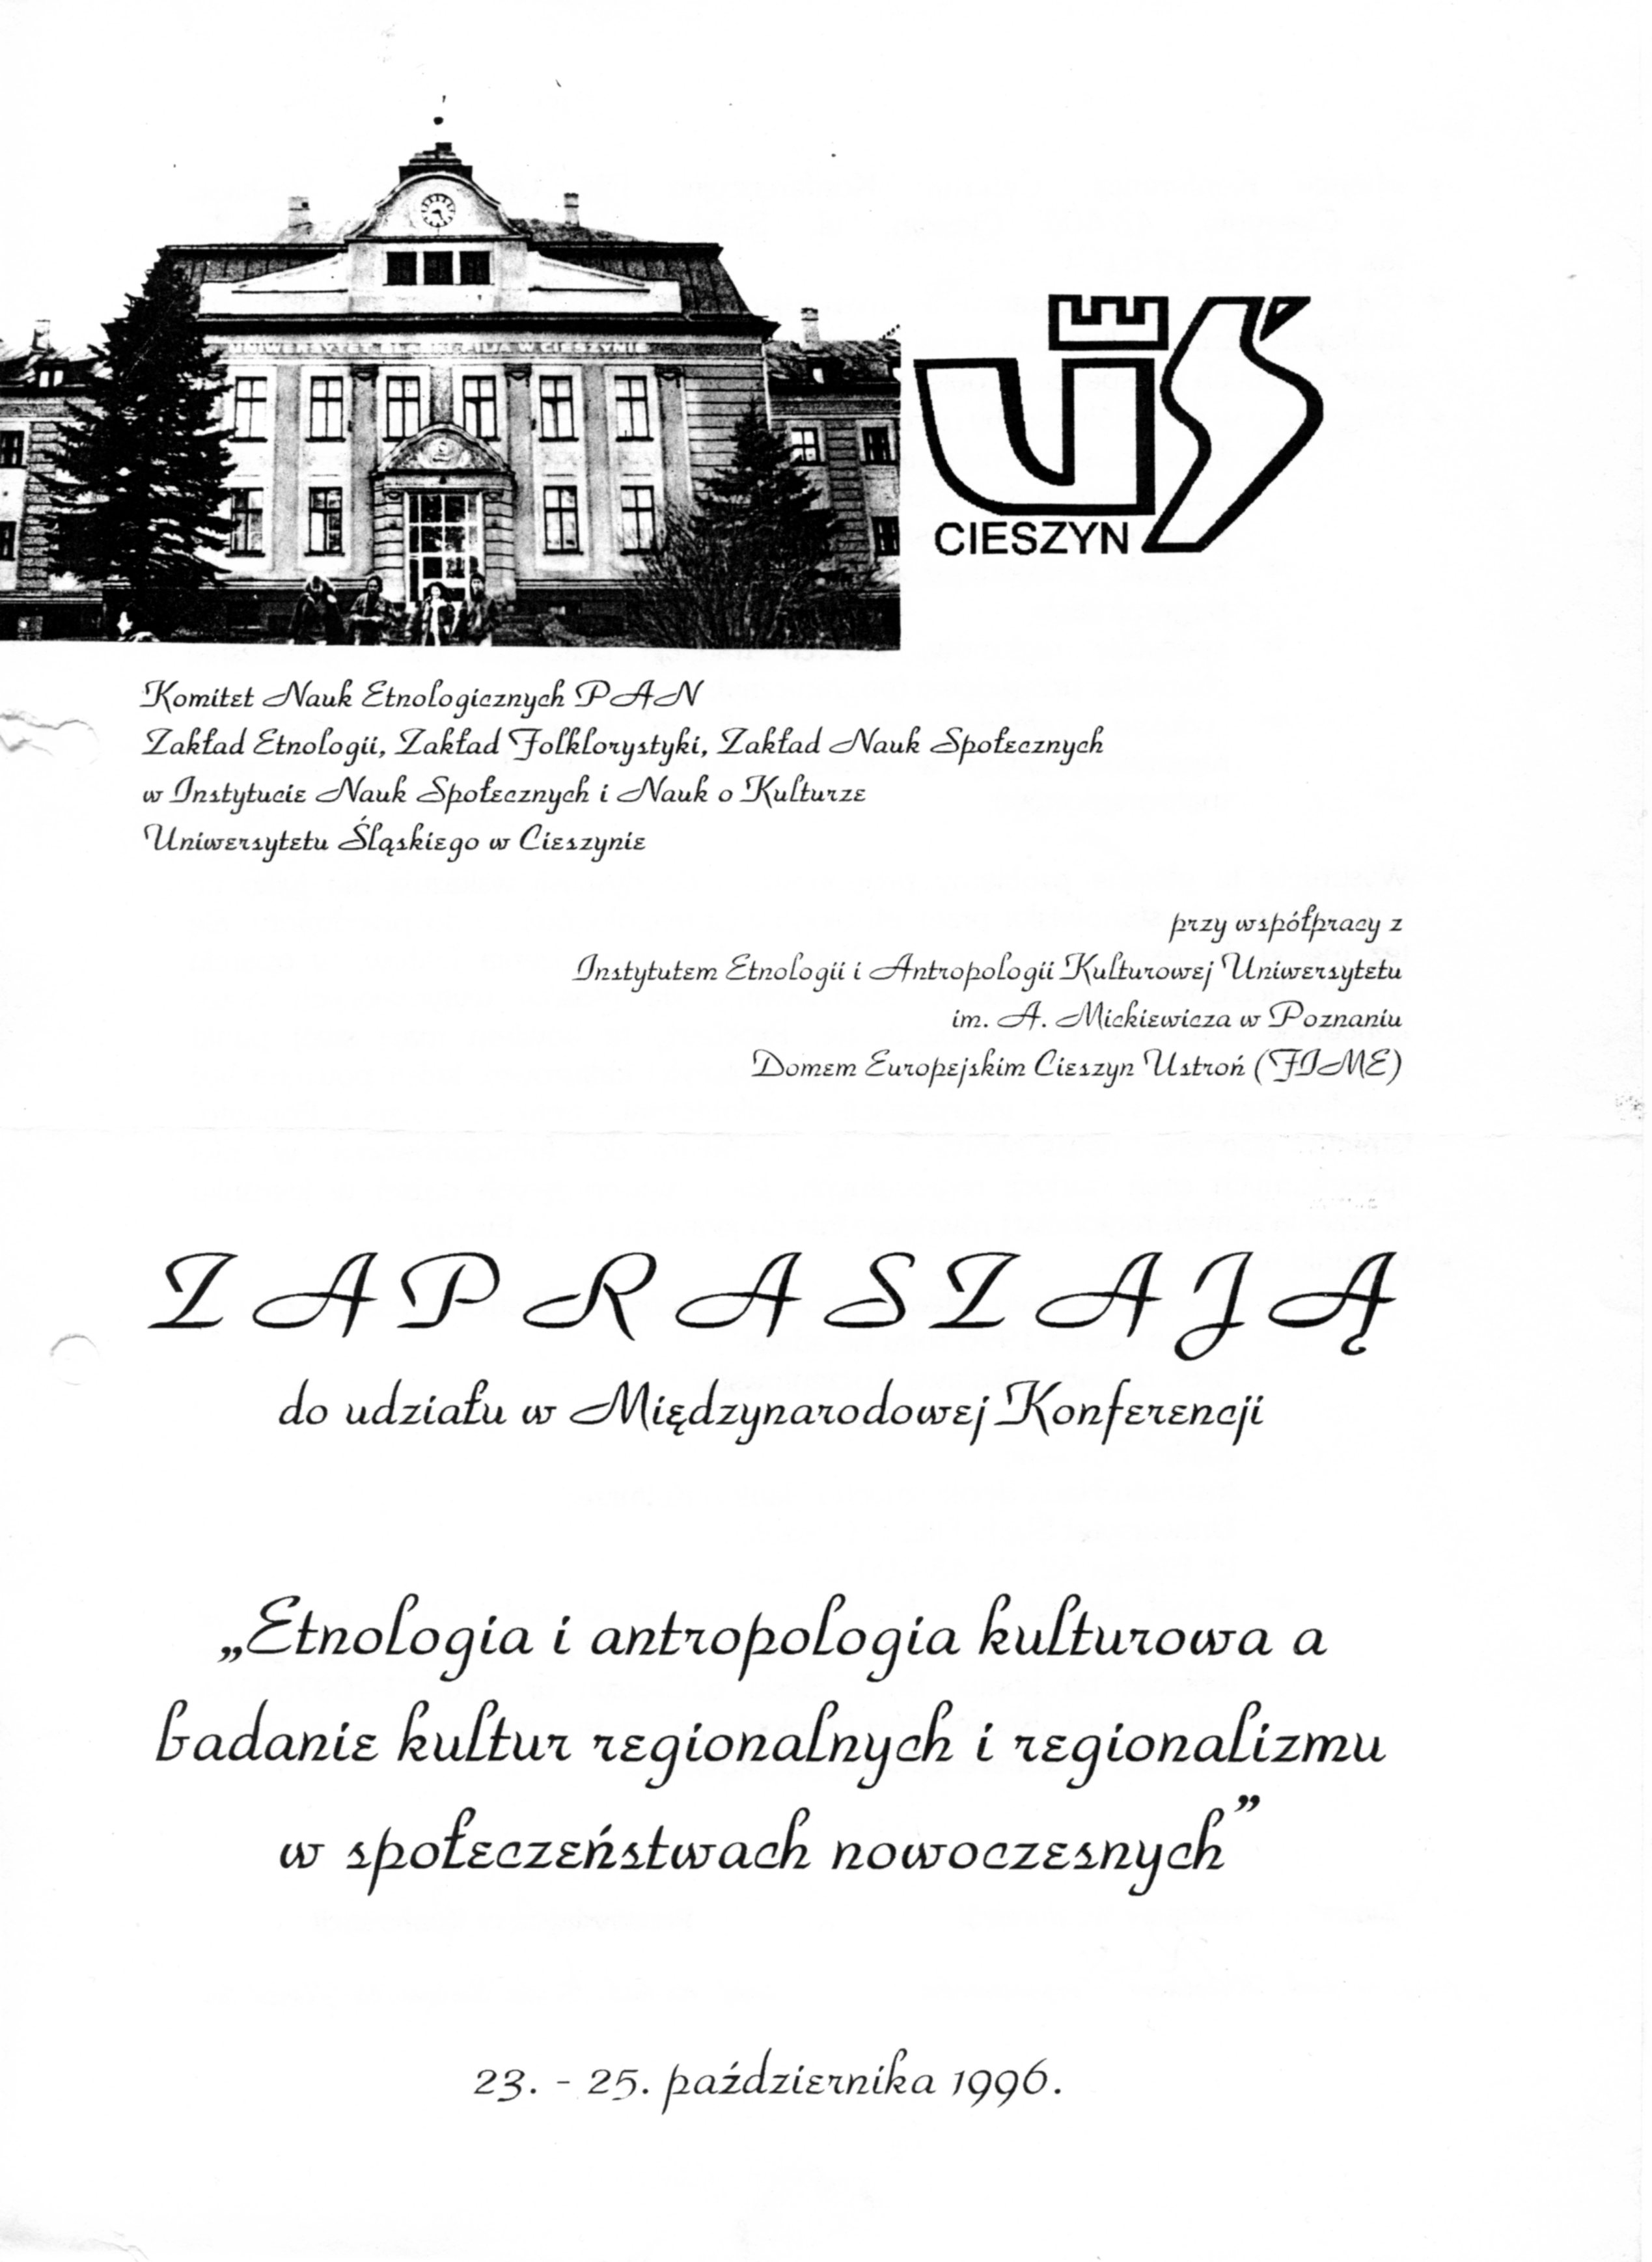 Konferencja-1996-Cieszyn-zaproszenie